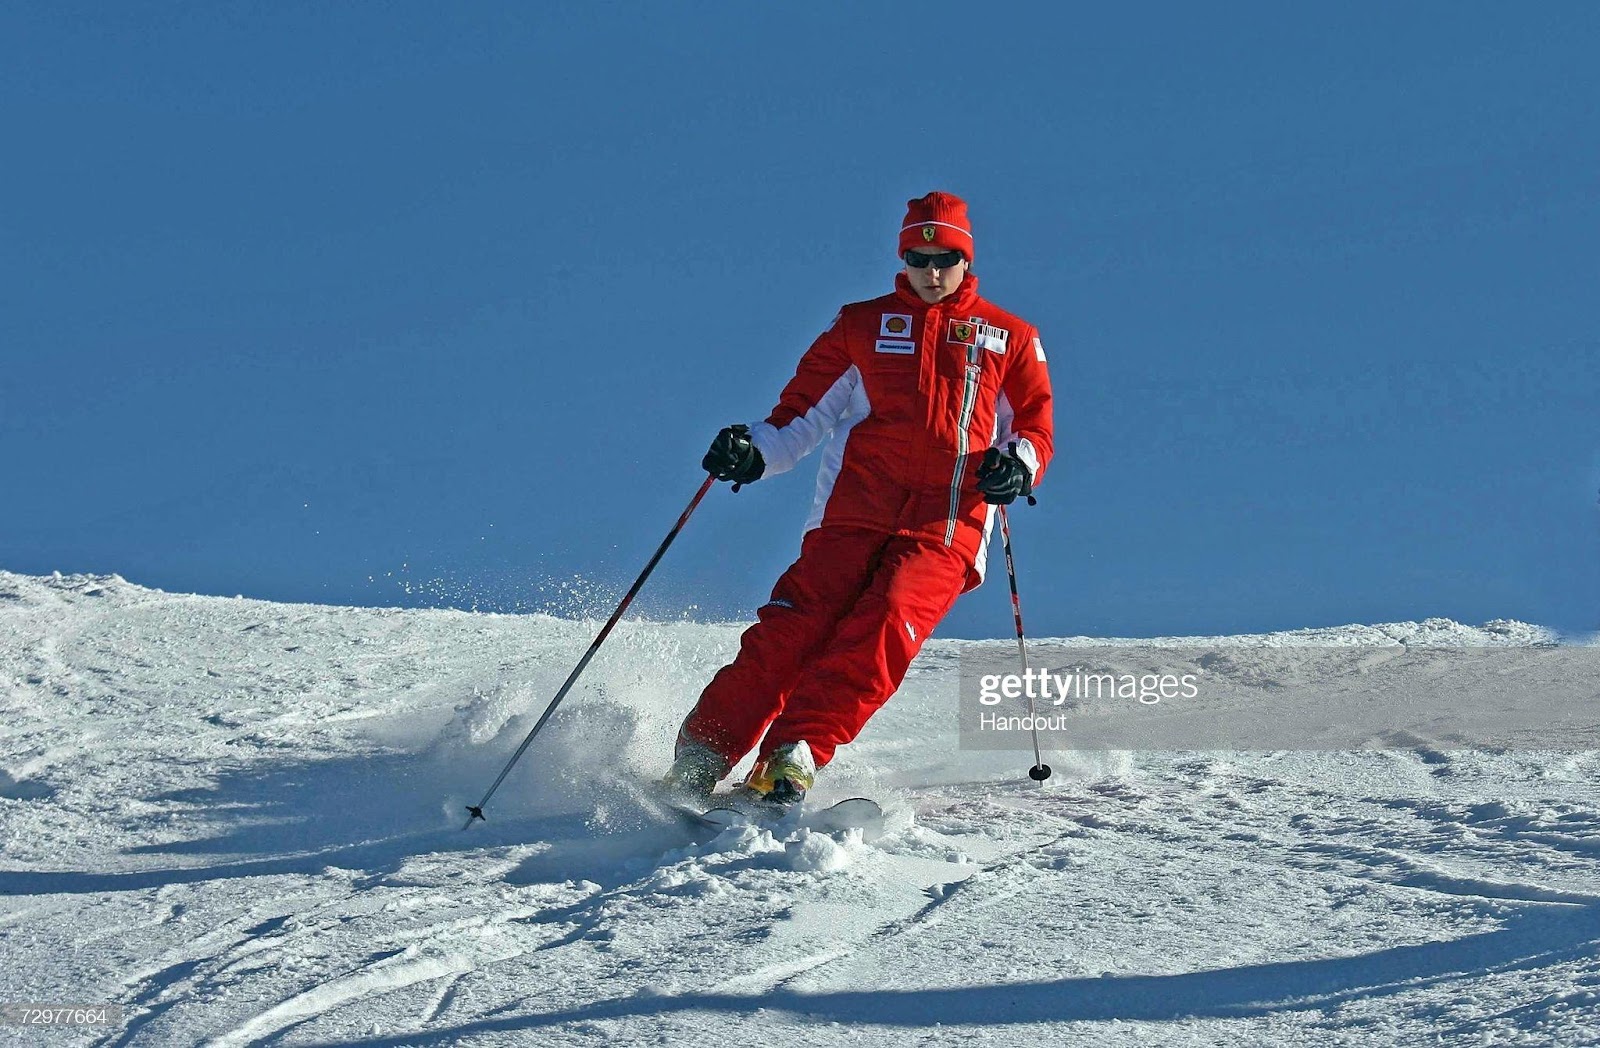 Kimi Raikkonen skiing.